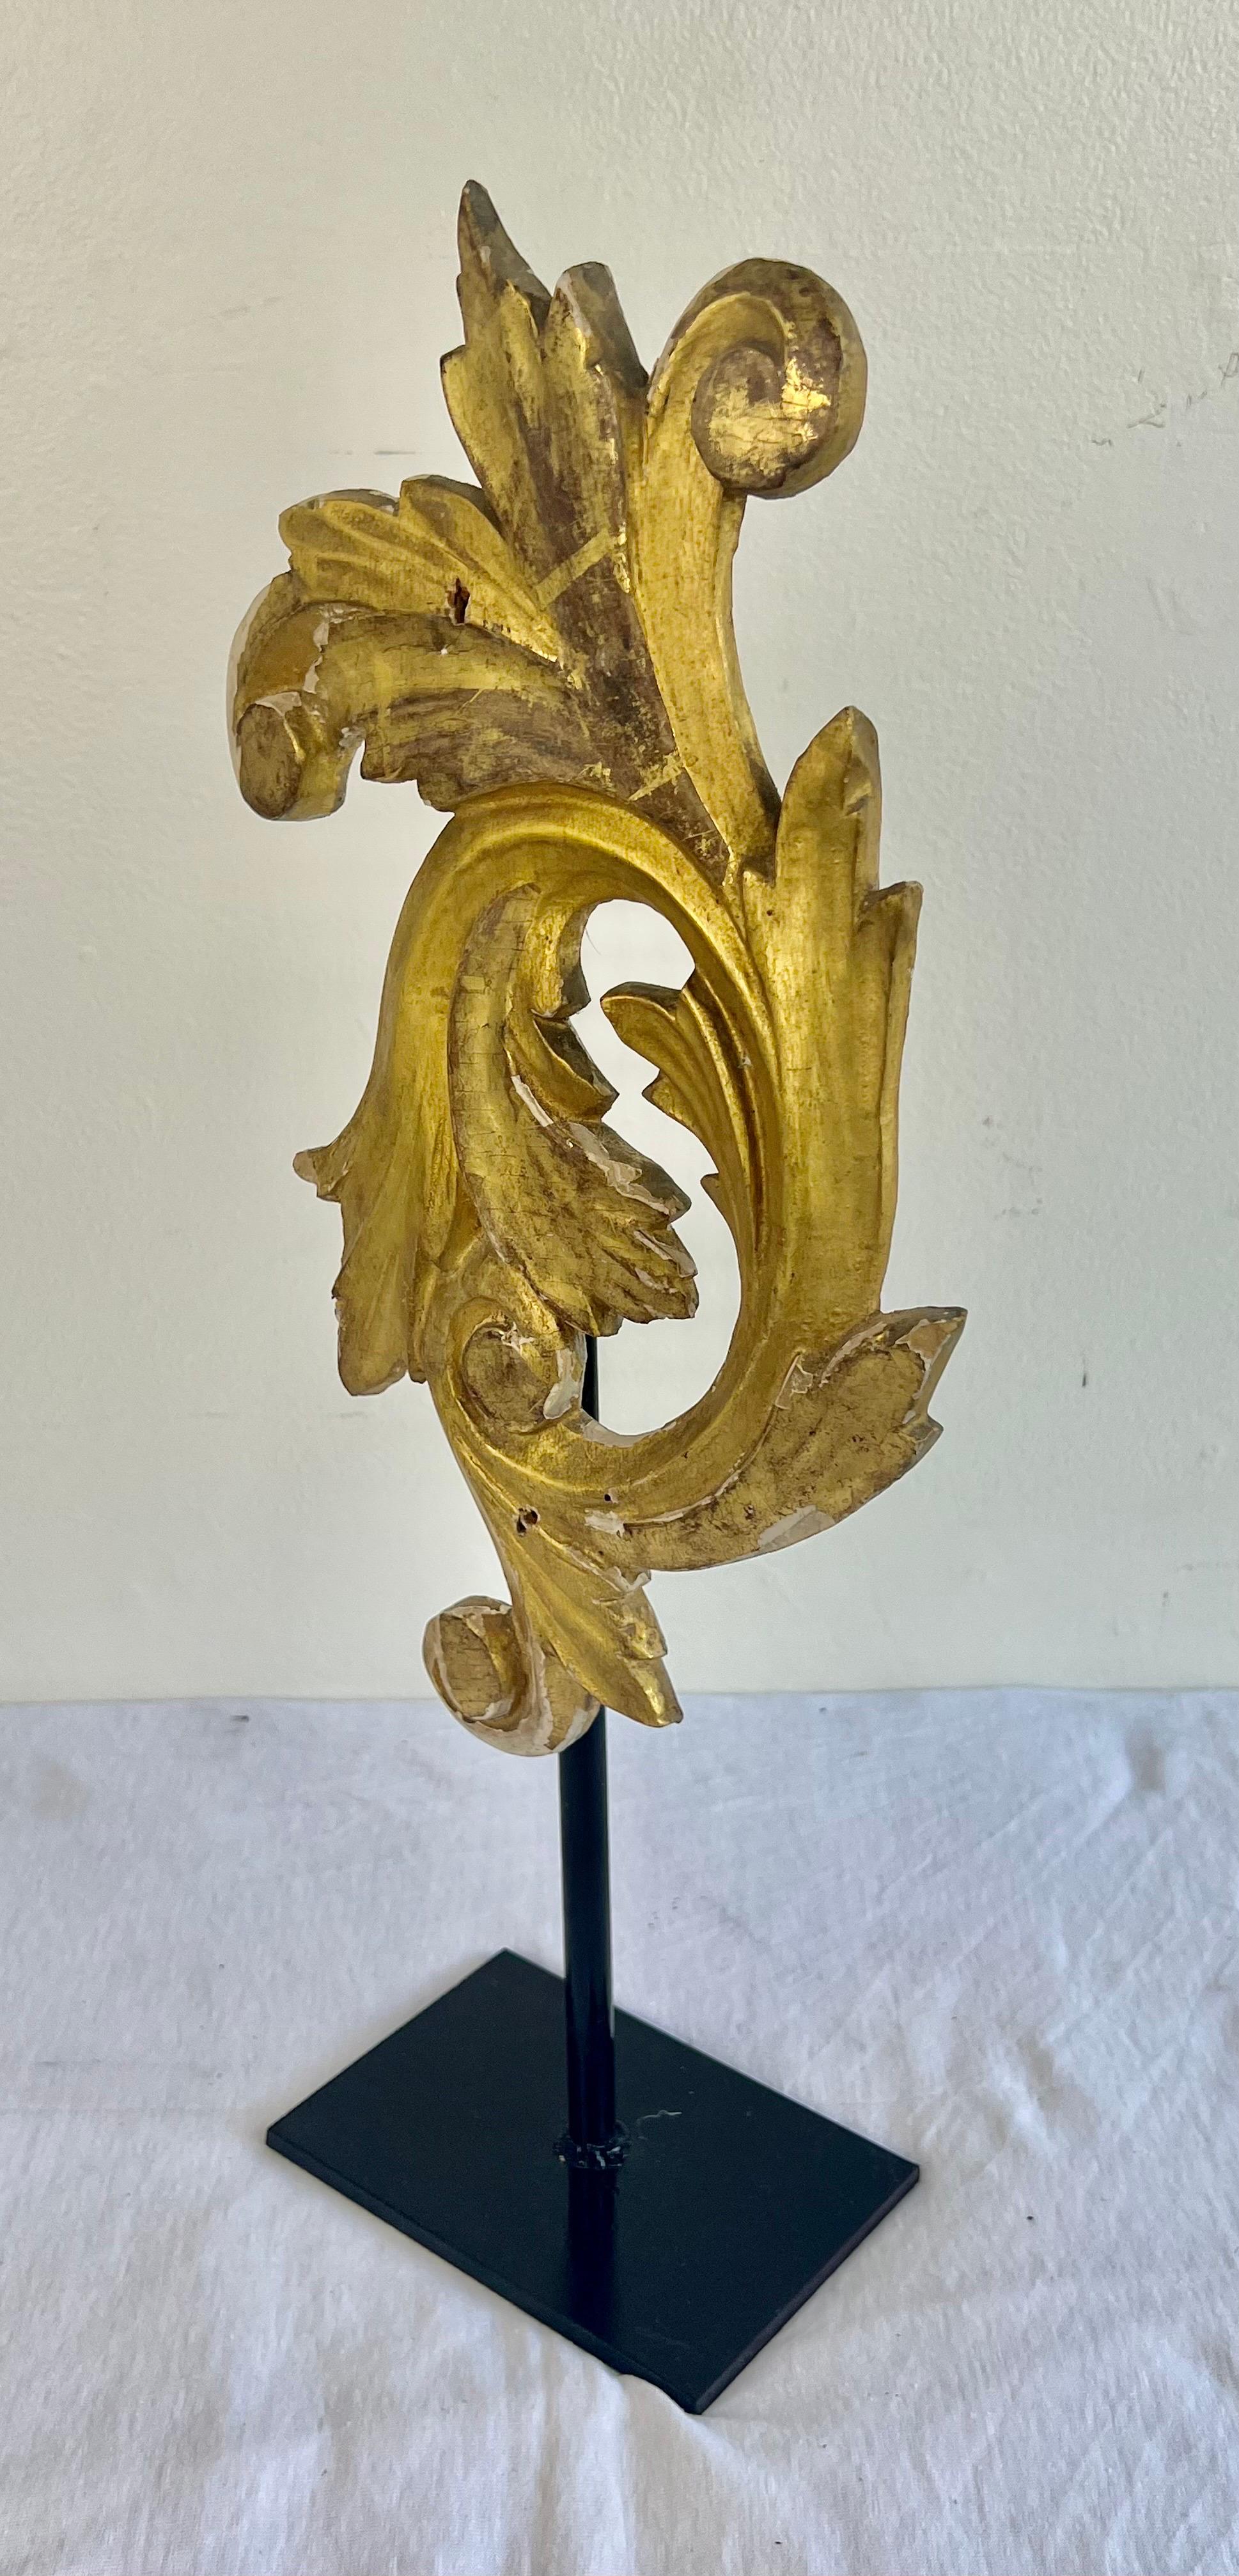 Vergoldetes Holz aus dem 19. Jahrhundert, geschnitztes architektonisches Überbleibsel in Form eines wirbelnden Akanthusblattes.  Das Akanthusblatt ist auf einem eisernen Sockel zur Dekoration montiert.  Dies würde sich gut auf einem Beistelltisch